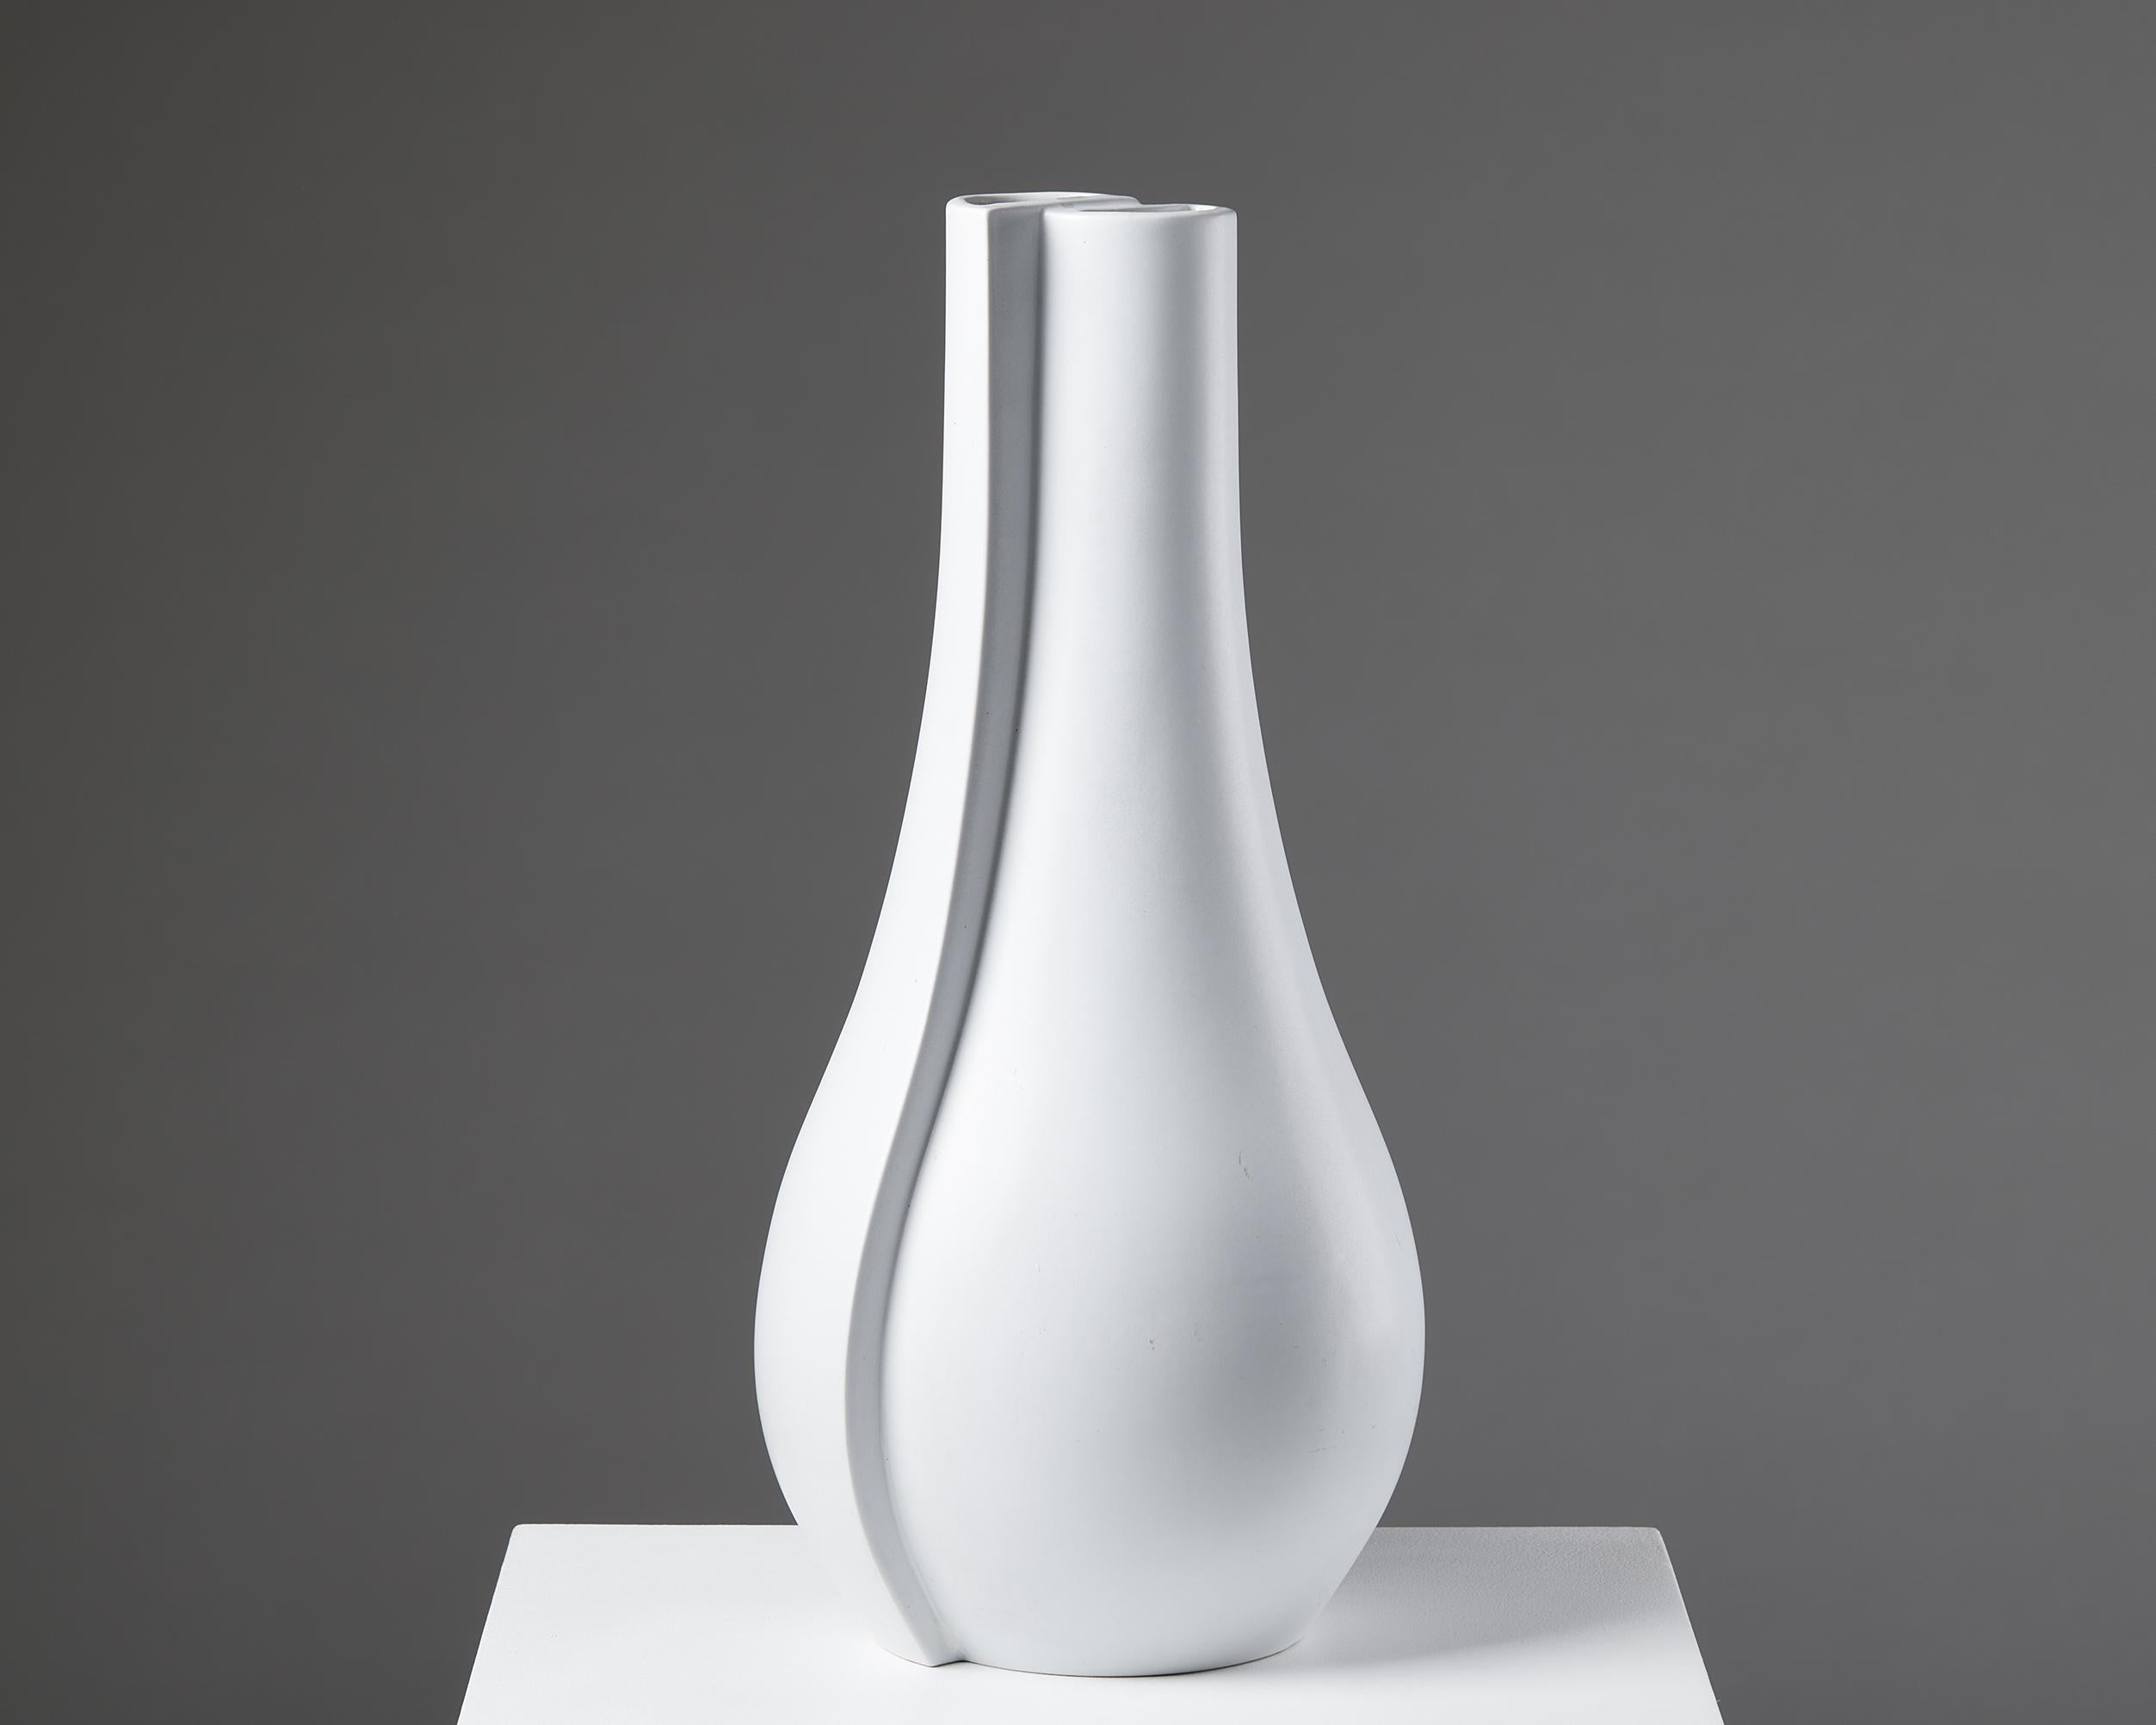 Vase 'Surrea', entworfen von Wilhelm Kåge für Gustavsberg,
Schweden, 1940er Jahre.

Steingut mit Carrara-Glasur.

Die Vase 